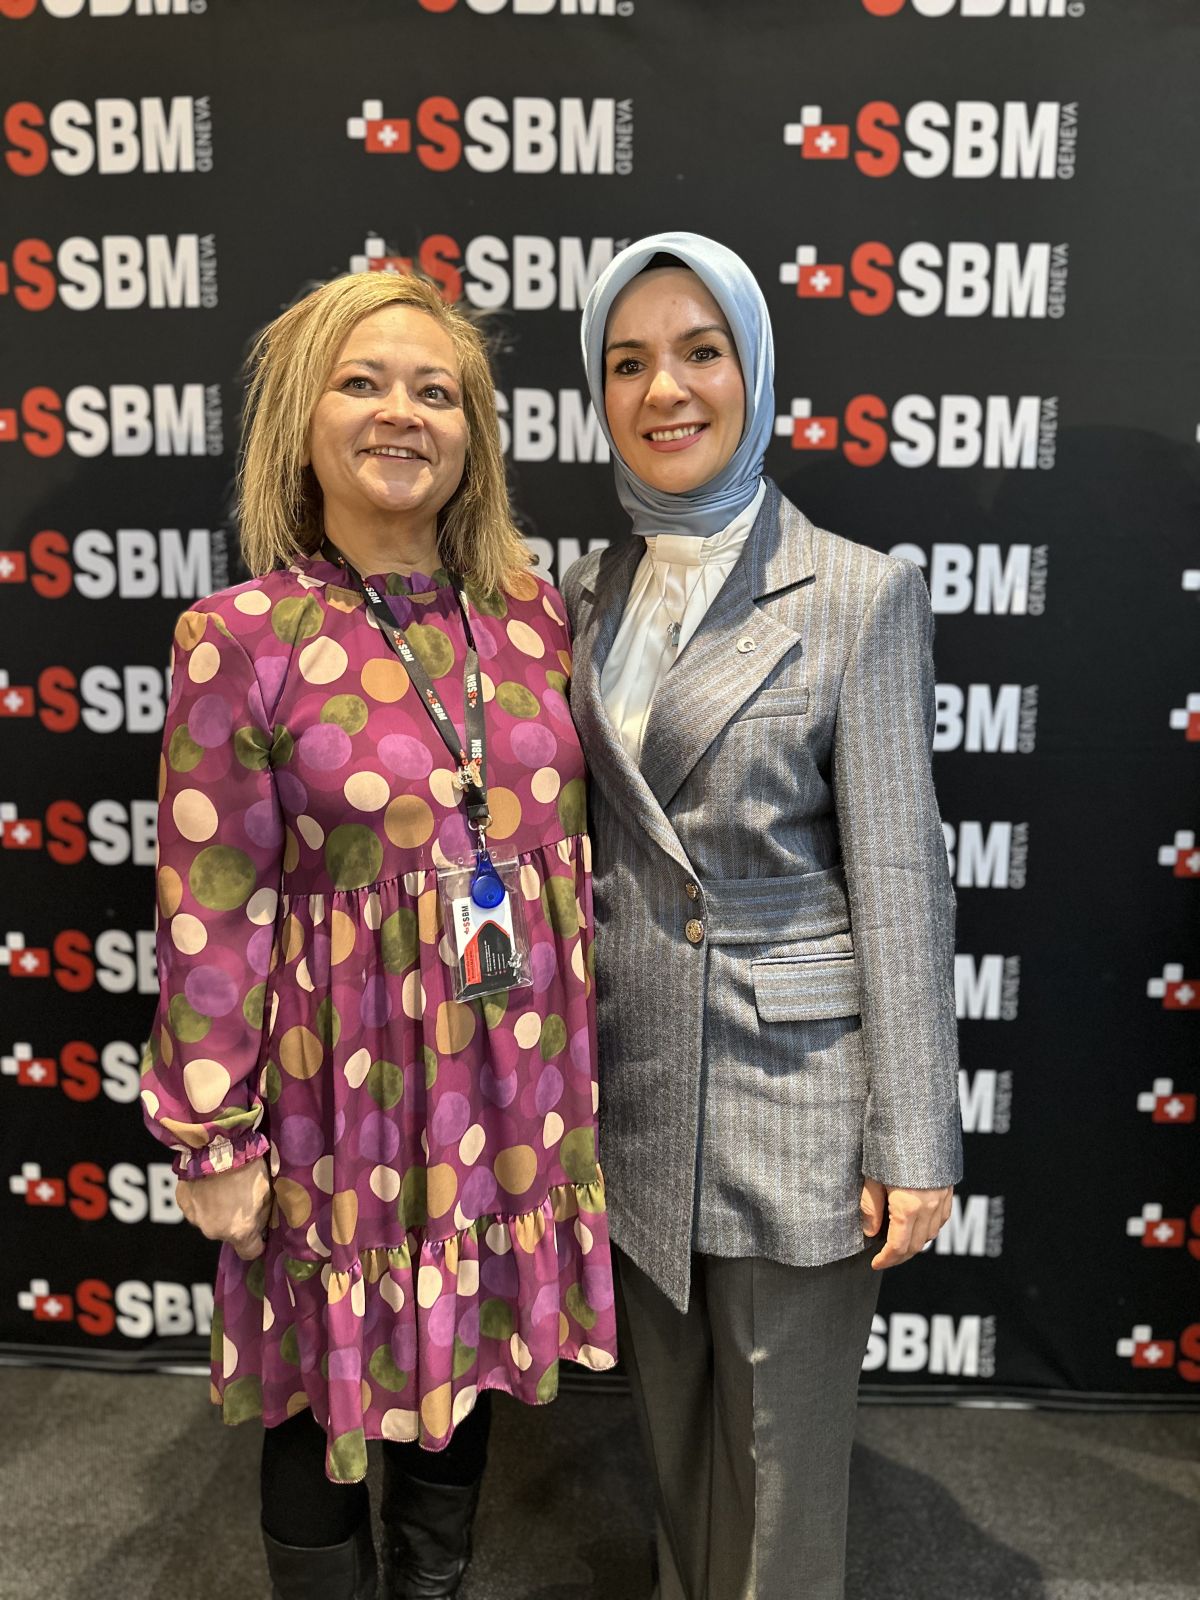 Celebrating Women Entrepreneurs at ssbm